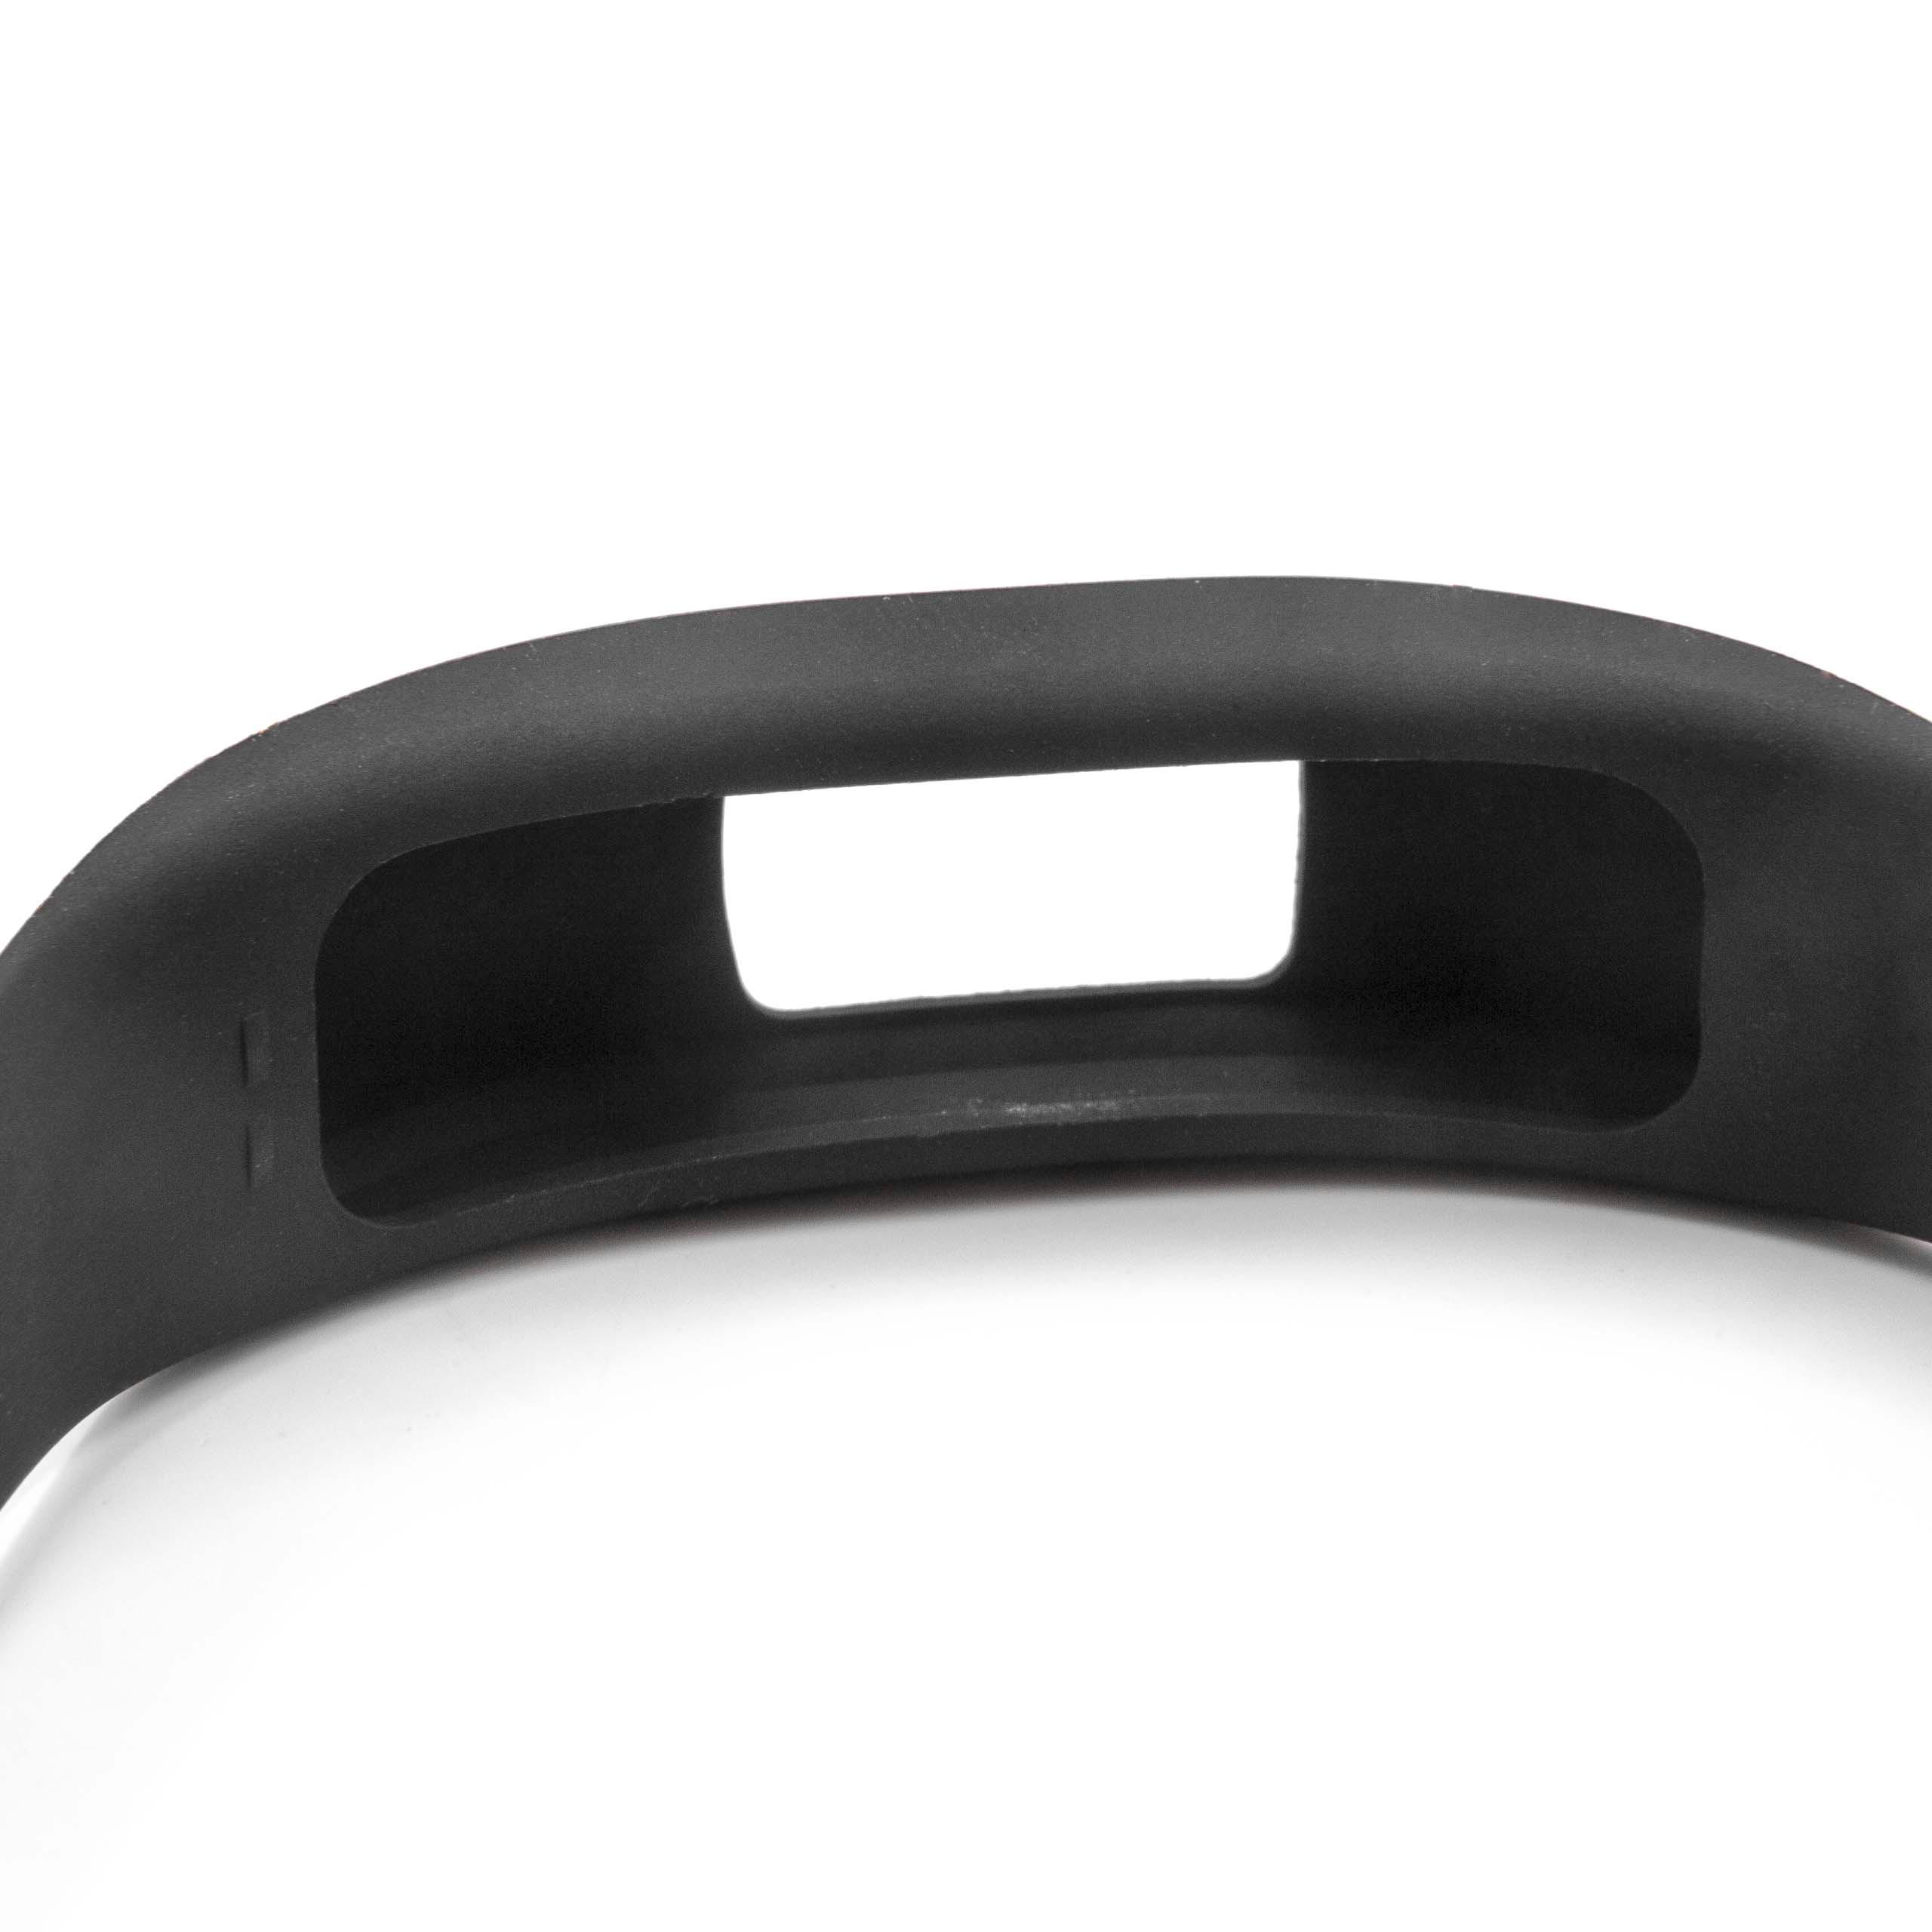 Bracelet pour montre intelligente Garmin Vivofit - 23 cm de long, 18mm de large, silicone, noir